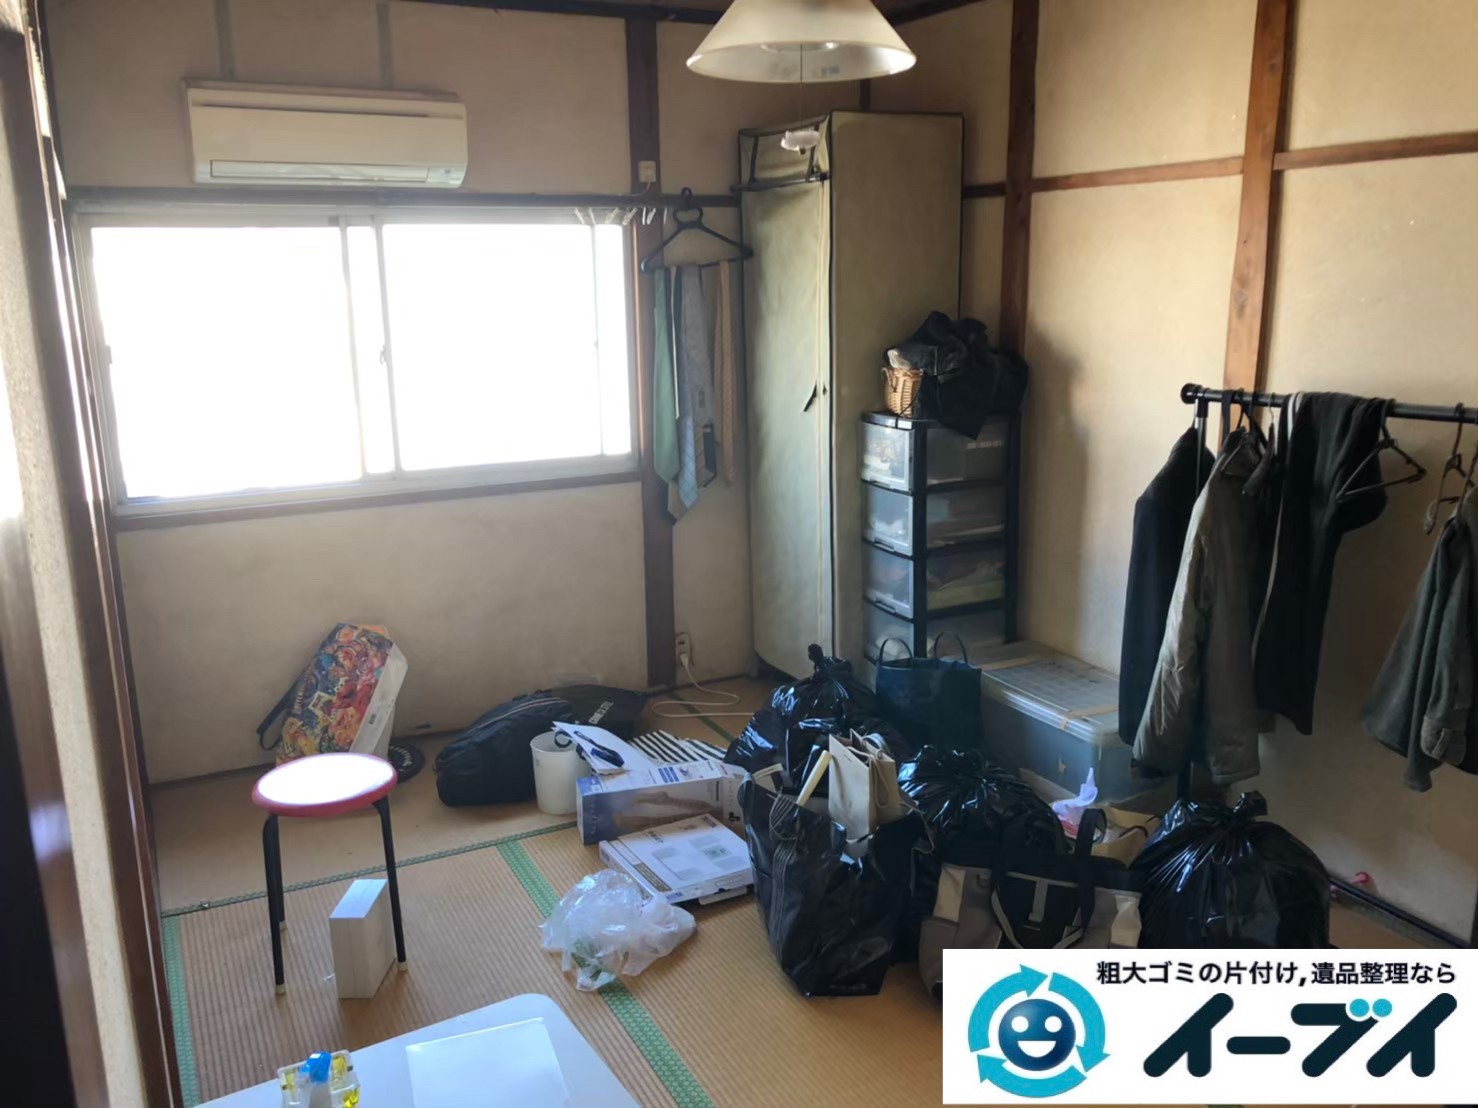 2020年６月３日大阪府大阪市忠岡町でお家のあるもの全て不用品回収させてもらいました。写真2